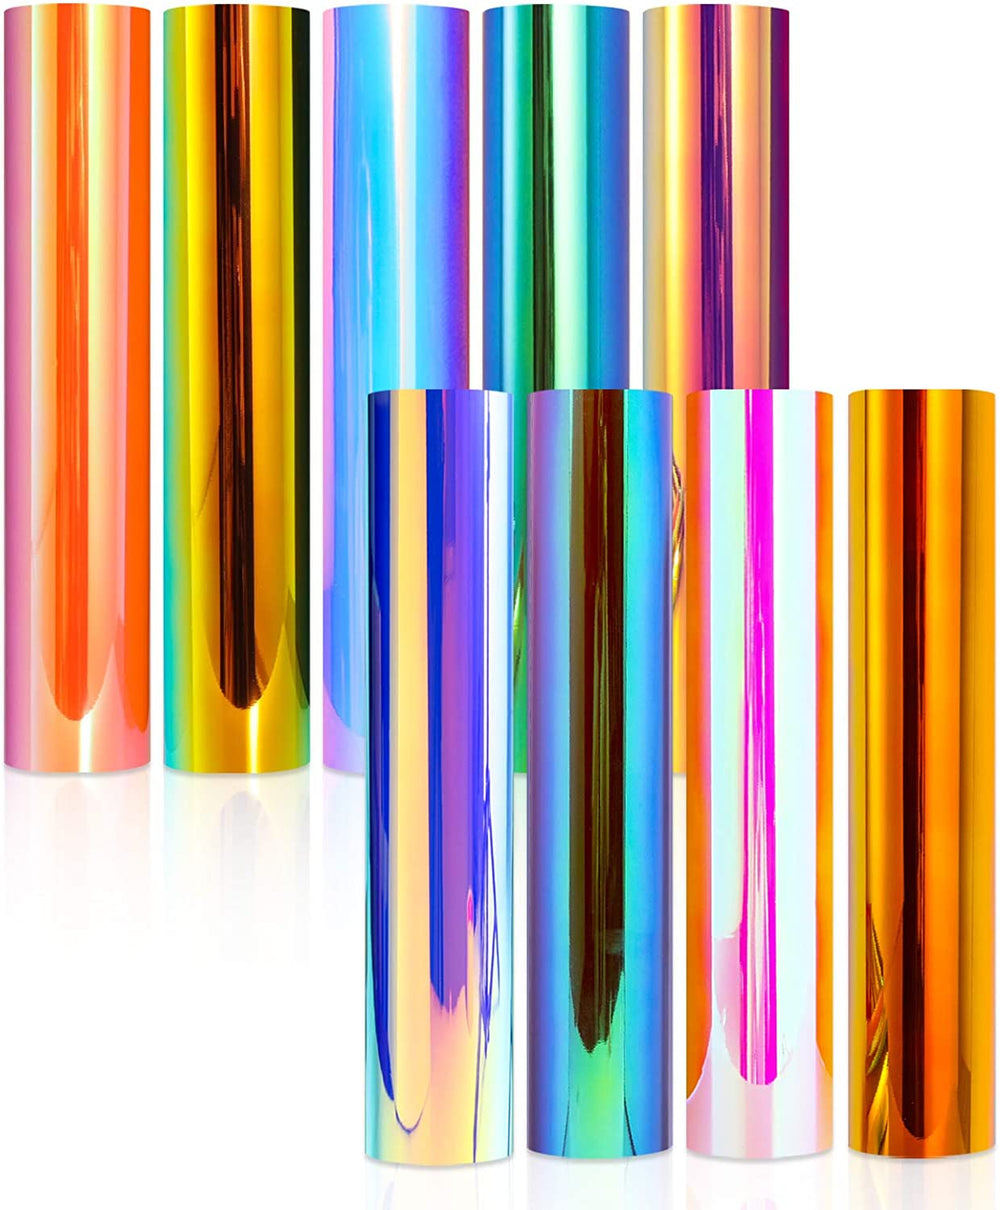 Paquete de vinilo autoadhesivo holográfico de 12.0 x 12.0 in, hojas de vinilo adhesivo en 9 colores surtidos para cortadores de artesanía, letras/calcomanías (con 1 papel de transferencia) - Arteztik